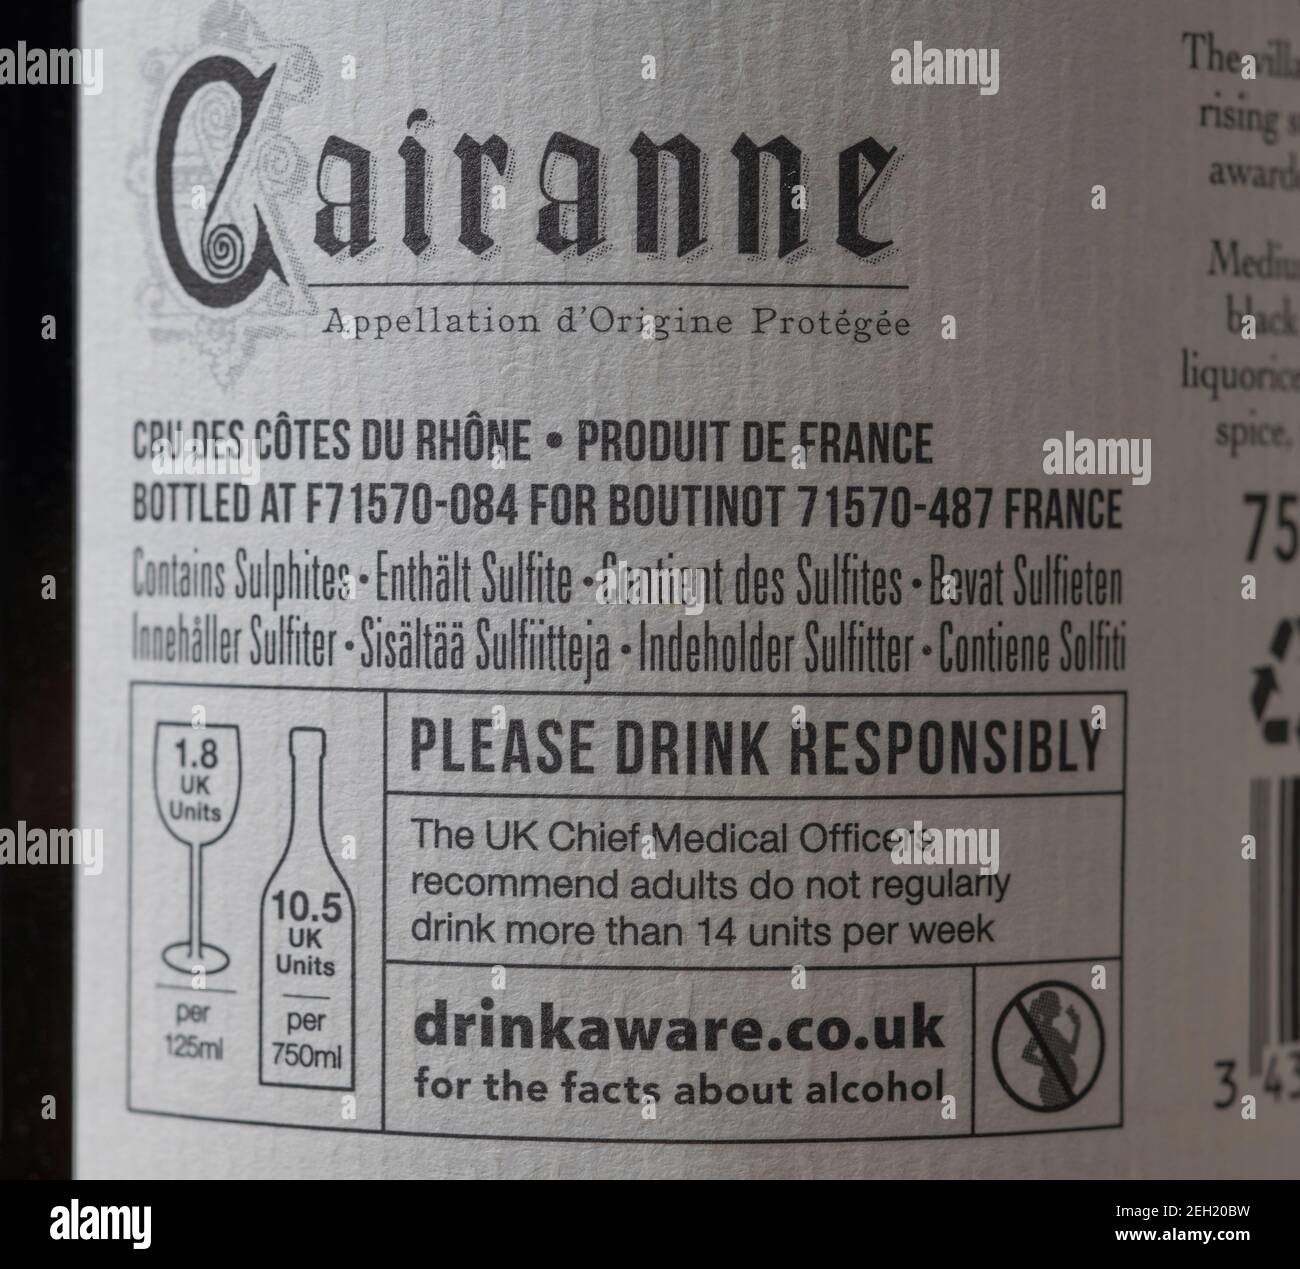 Cairanne 2019 French Southern Rhône Valley bouteille de vin étiquette arrière gros plan Banque D'Images